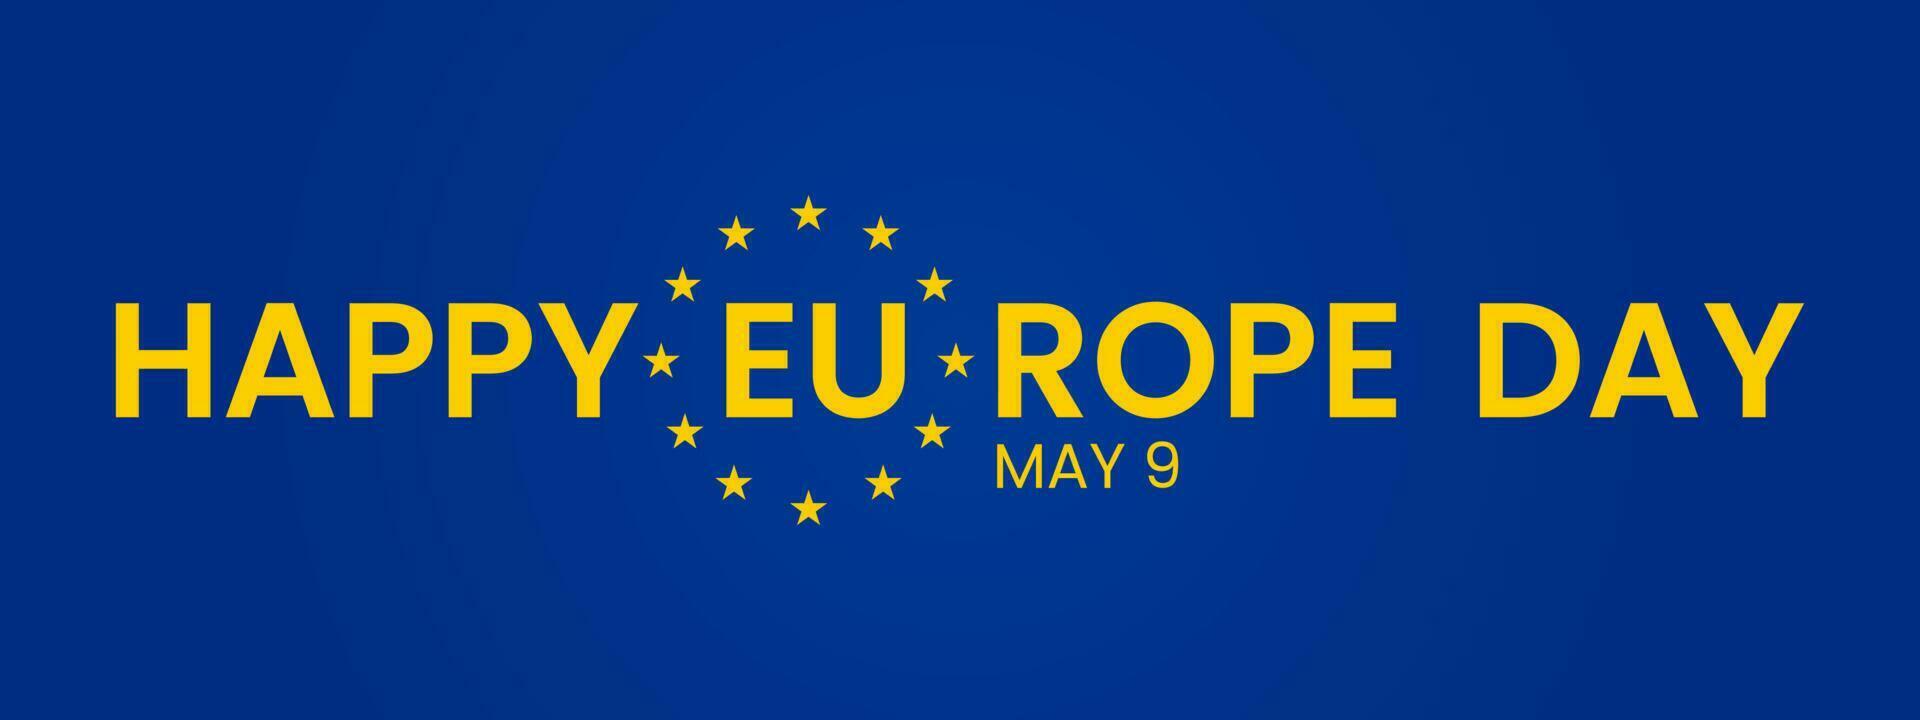 glücklich Europa Tag von europäisch Union. kann 9. Blau Flagge, Gelb Sterne, vielfältig Menschen halten Hände zusammen, anders kulturell Gleichwertigkeit, Vektor Illustration.